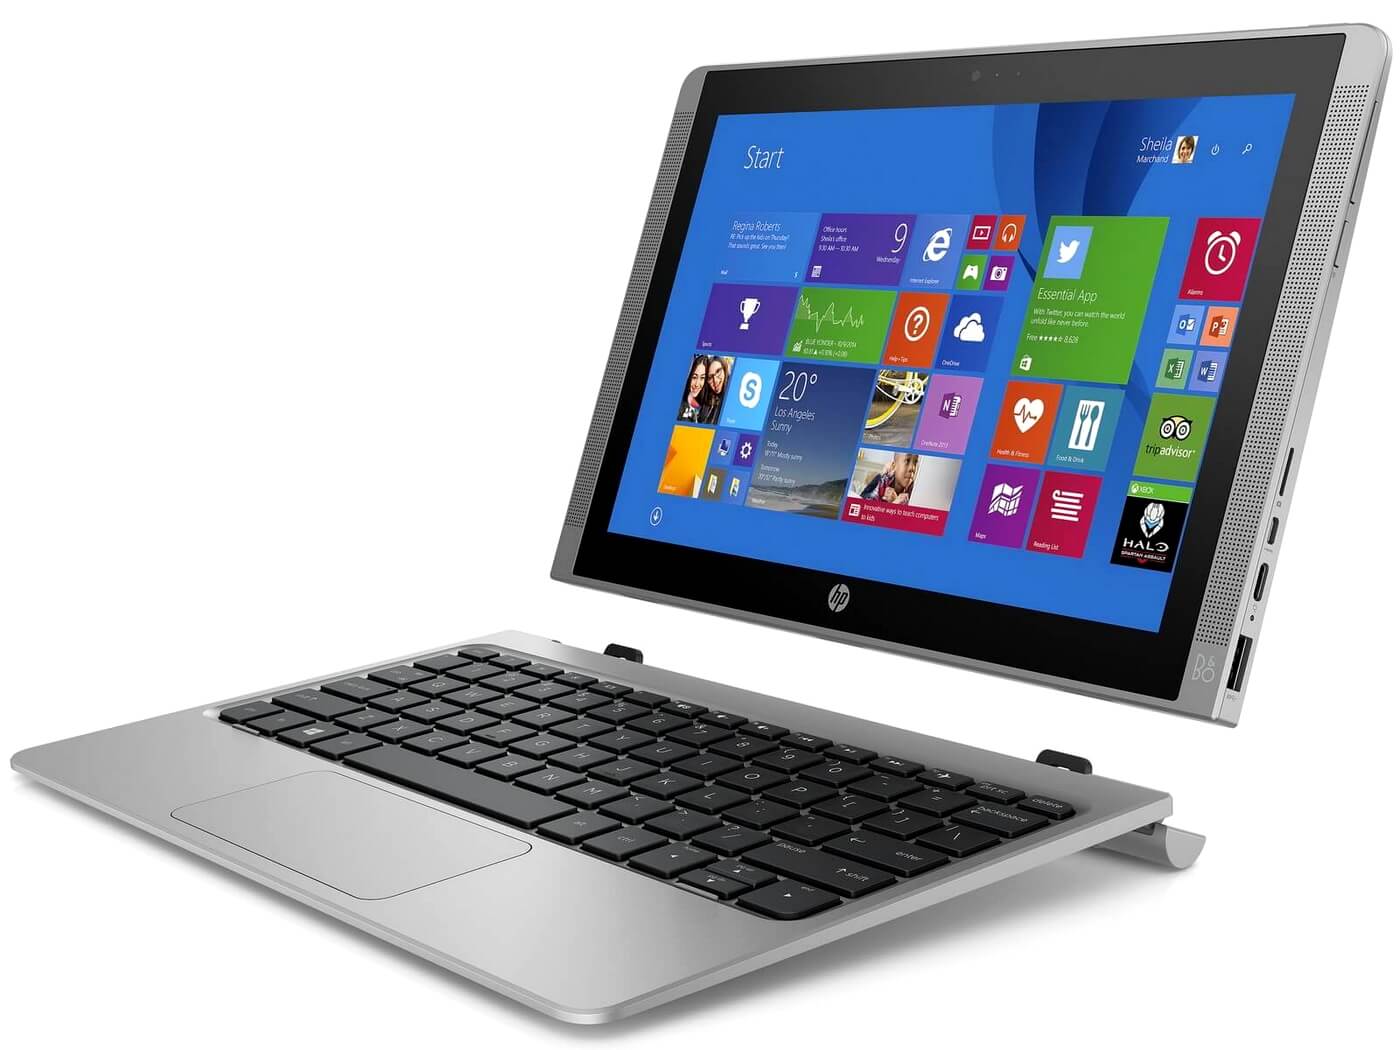 HP представила гибридный Pavilion X2 и новые ноутбуки Envy